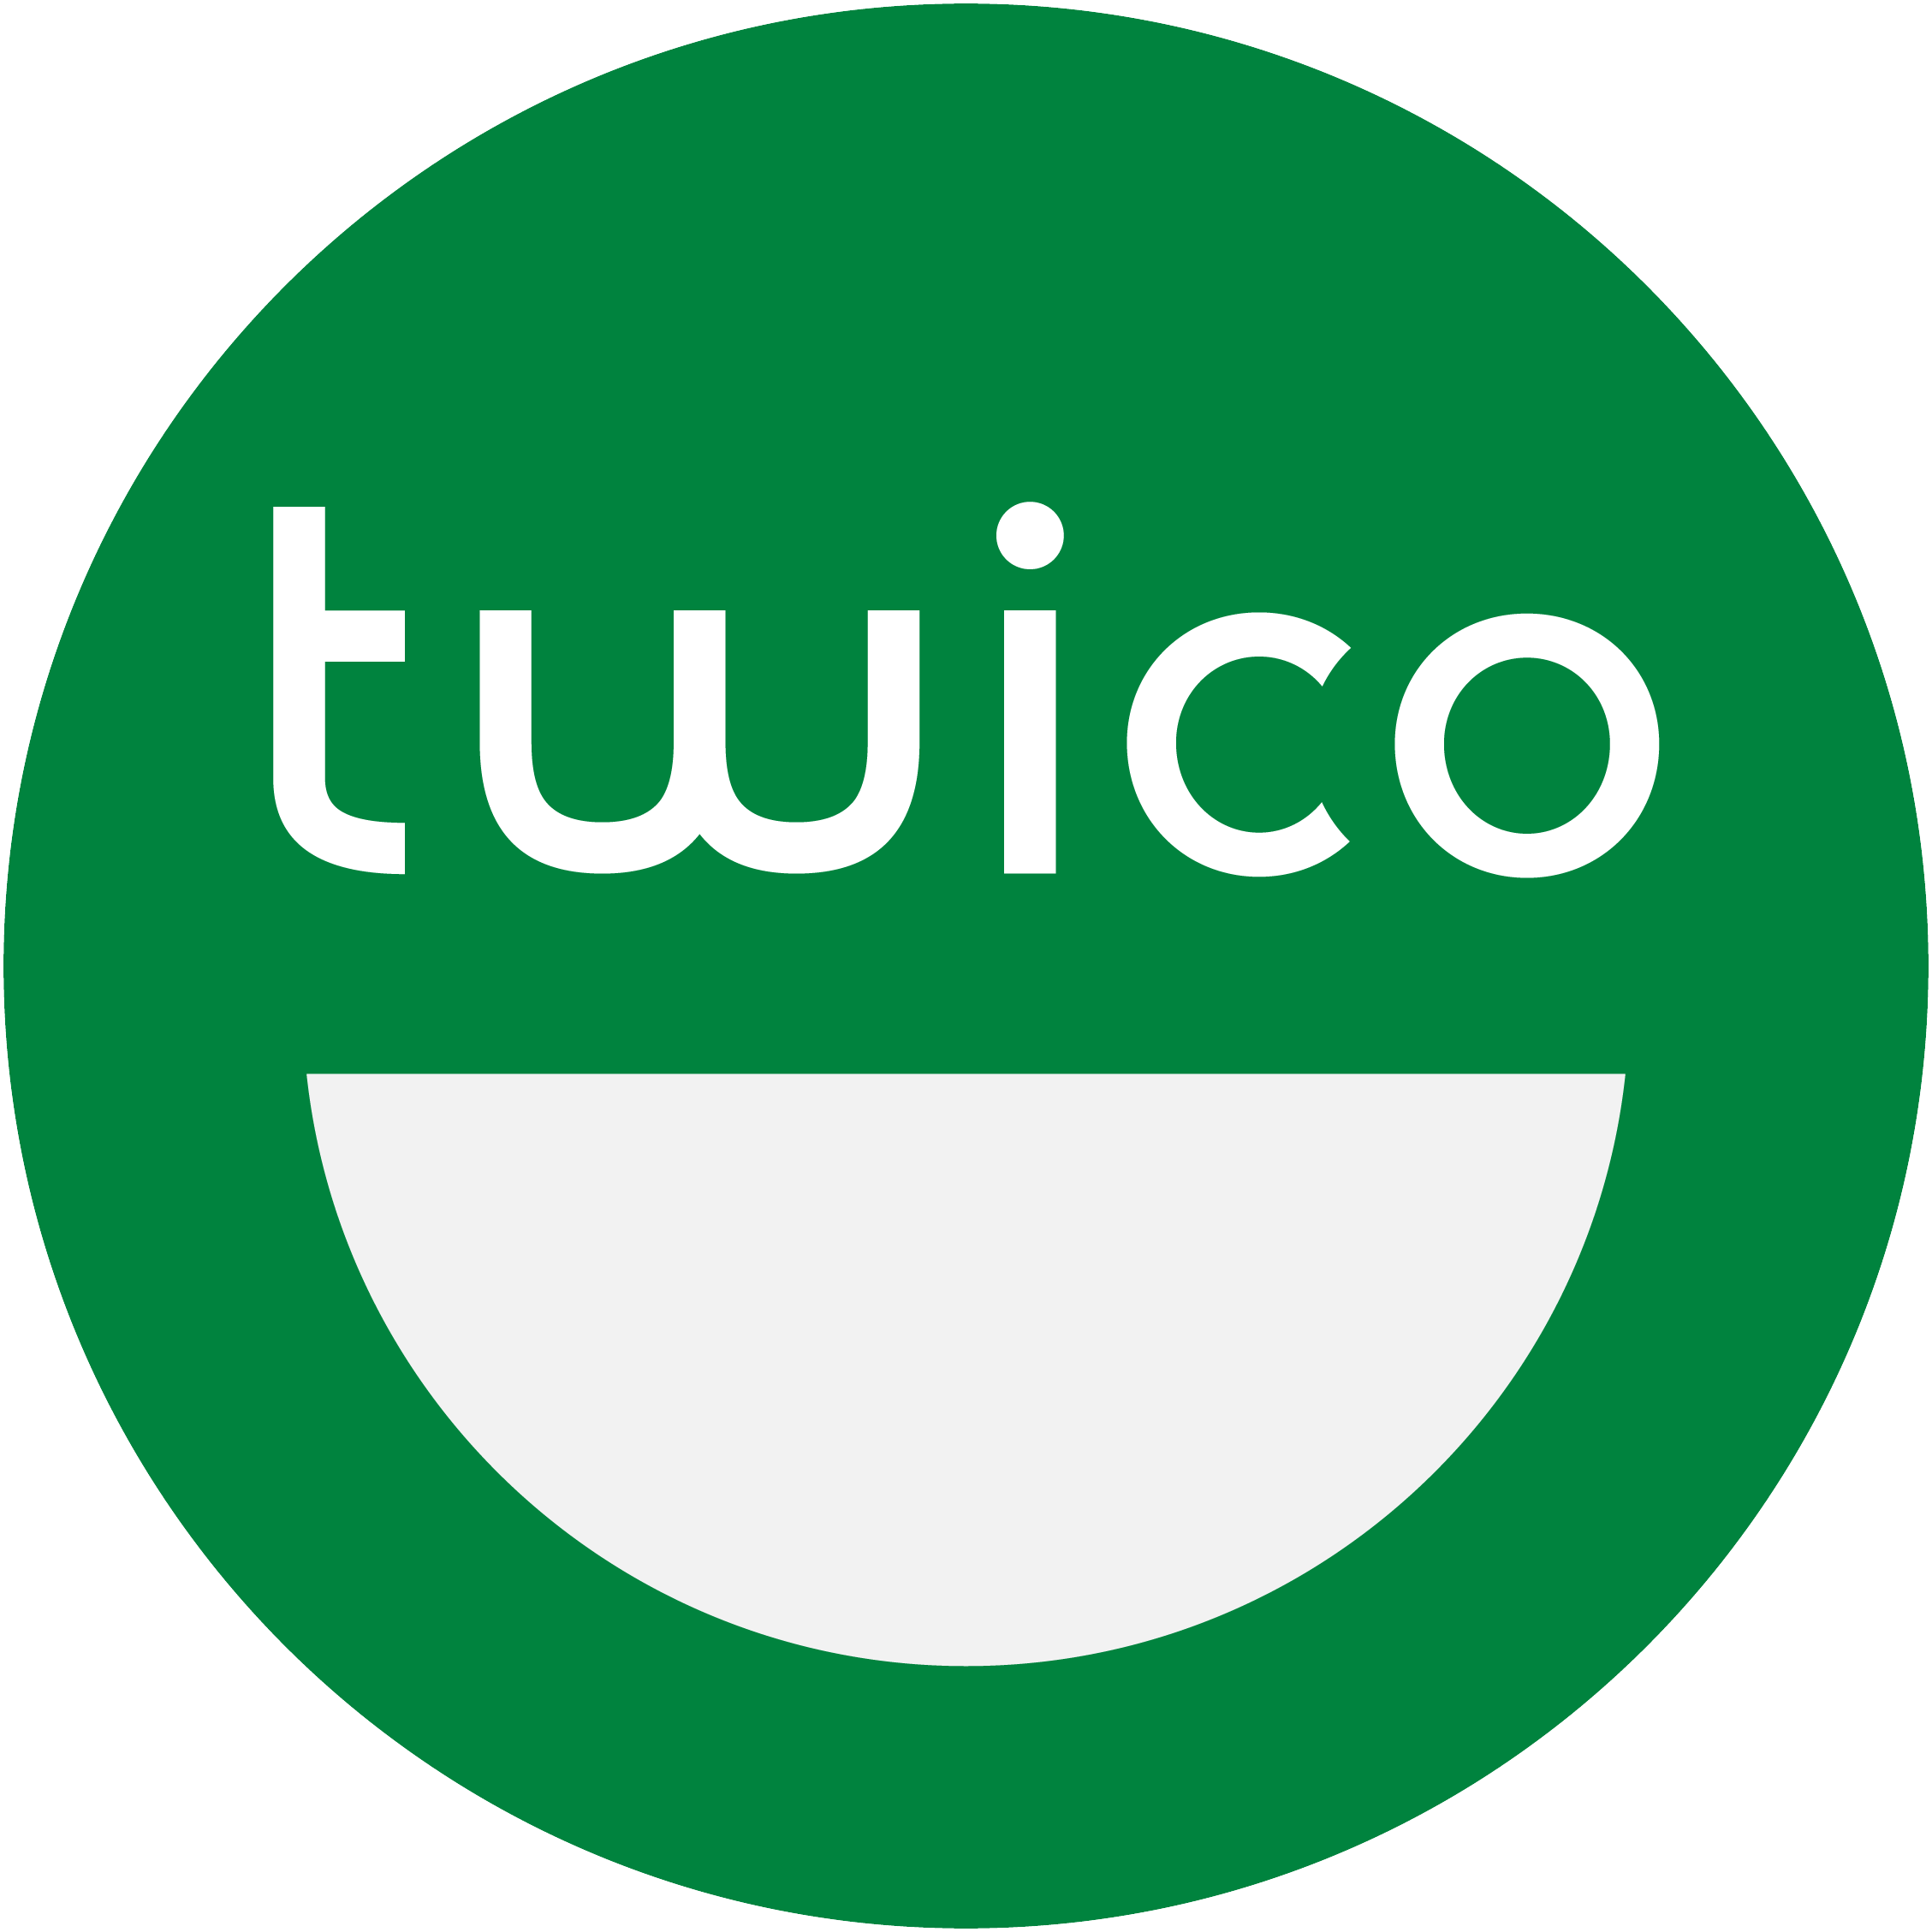 twico